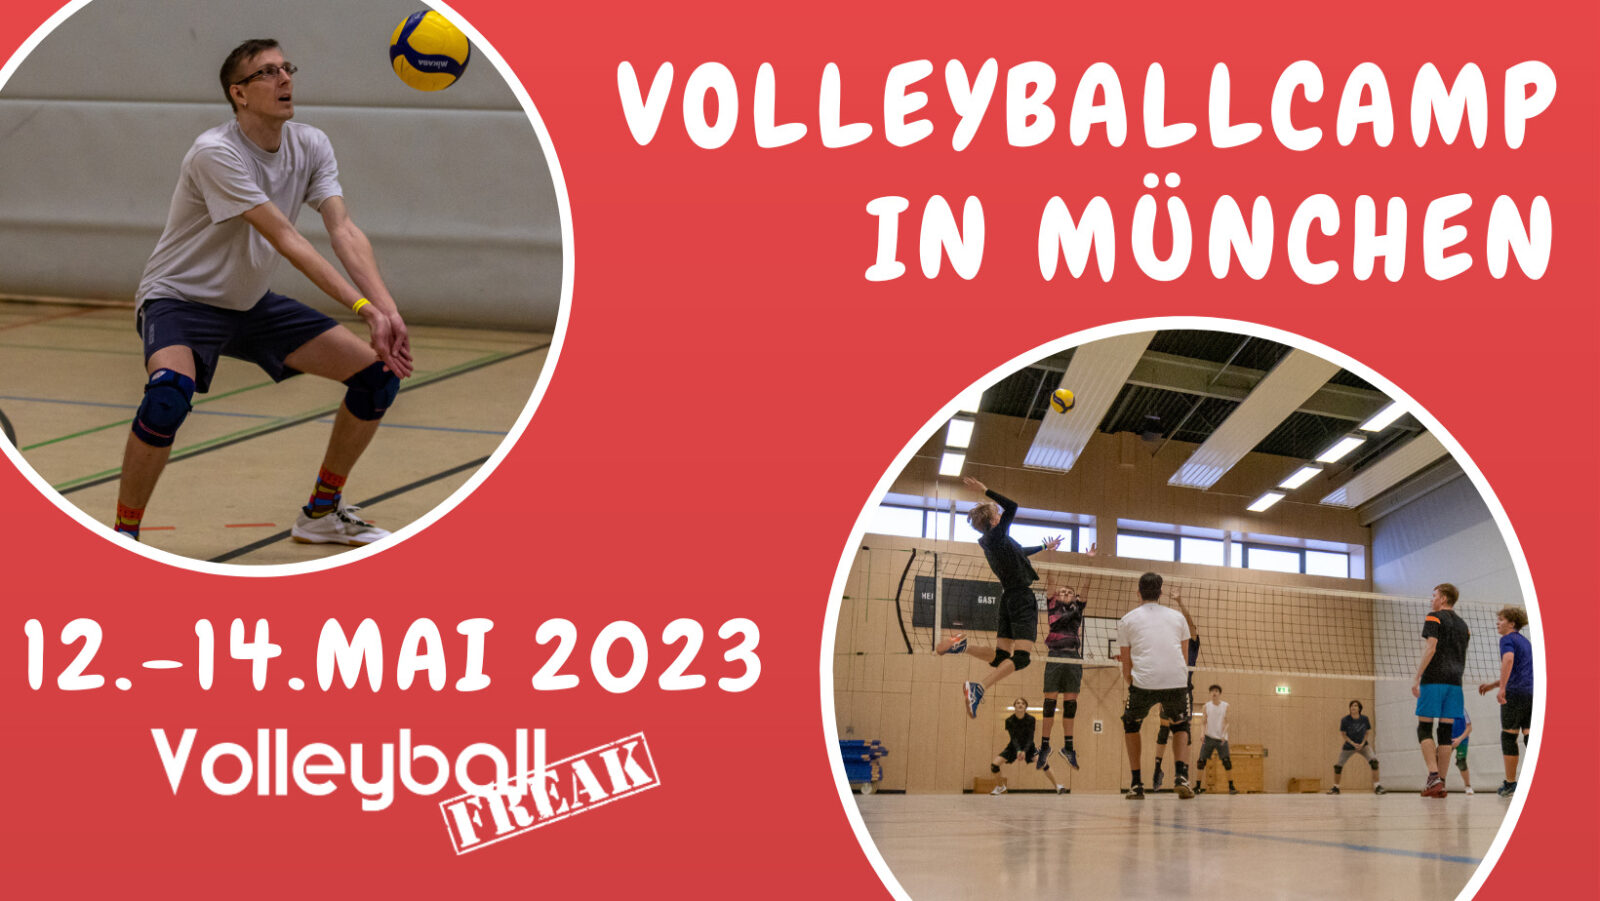 Volleyballcamp in München vom 12.-14.5 2023